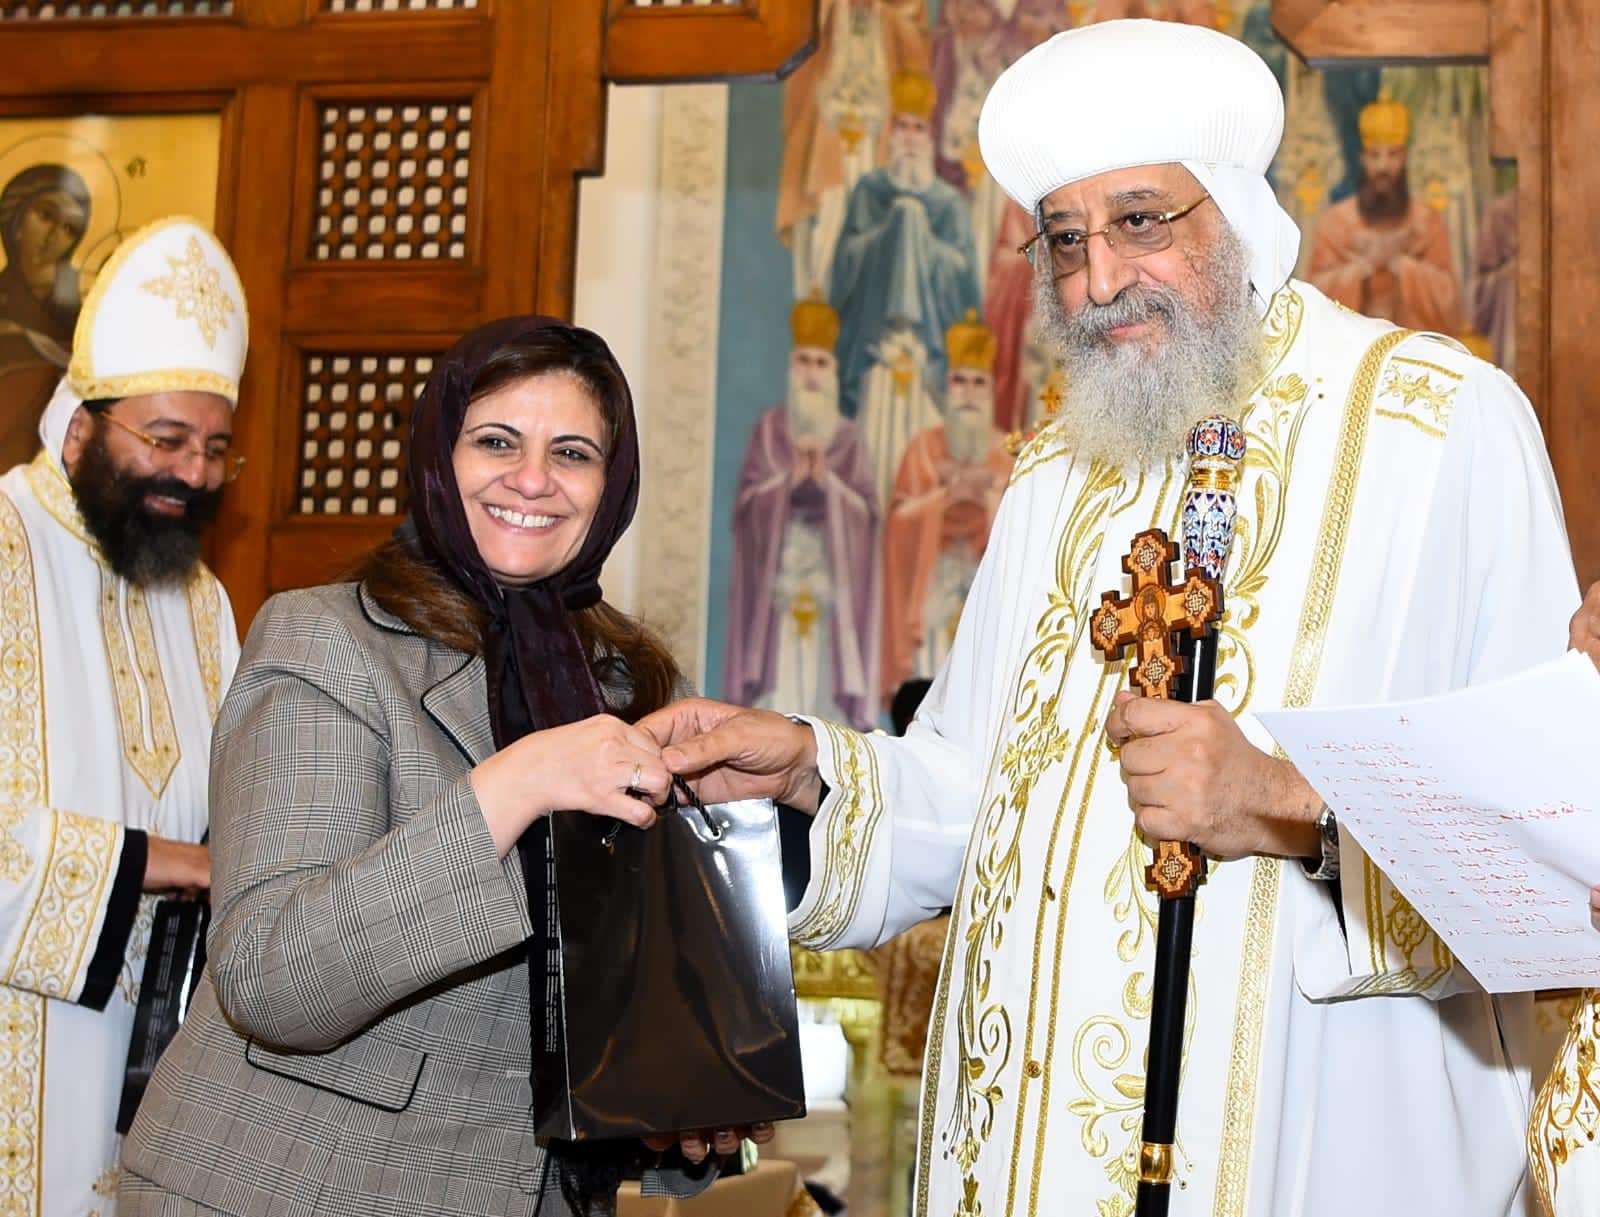 وزيرة الهجرة : مصر تحتضن جميع الأديان على أرضها بمحبة وتسامح